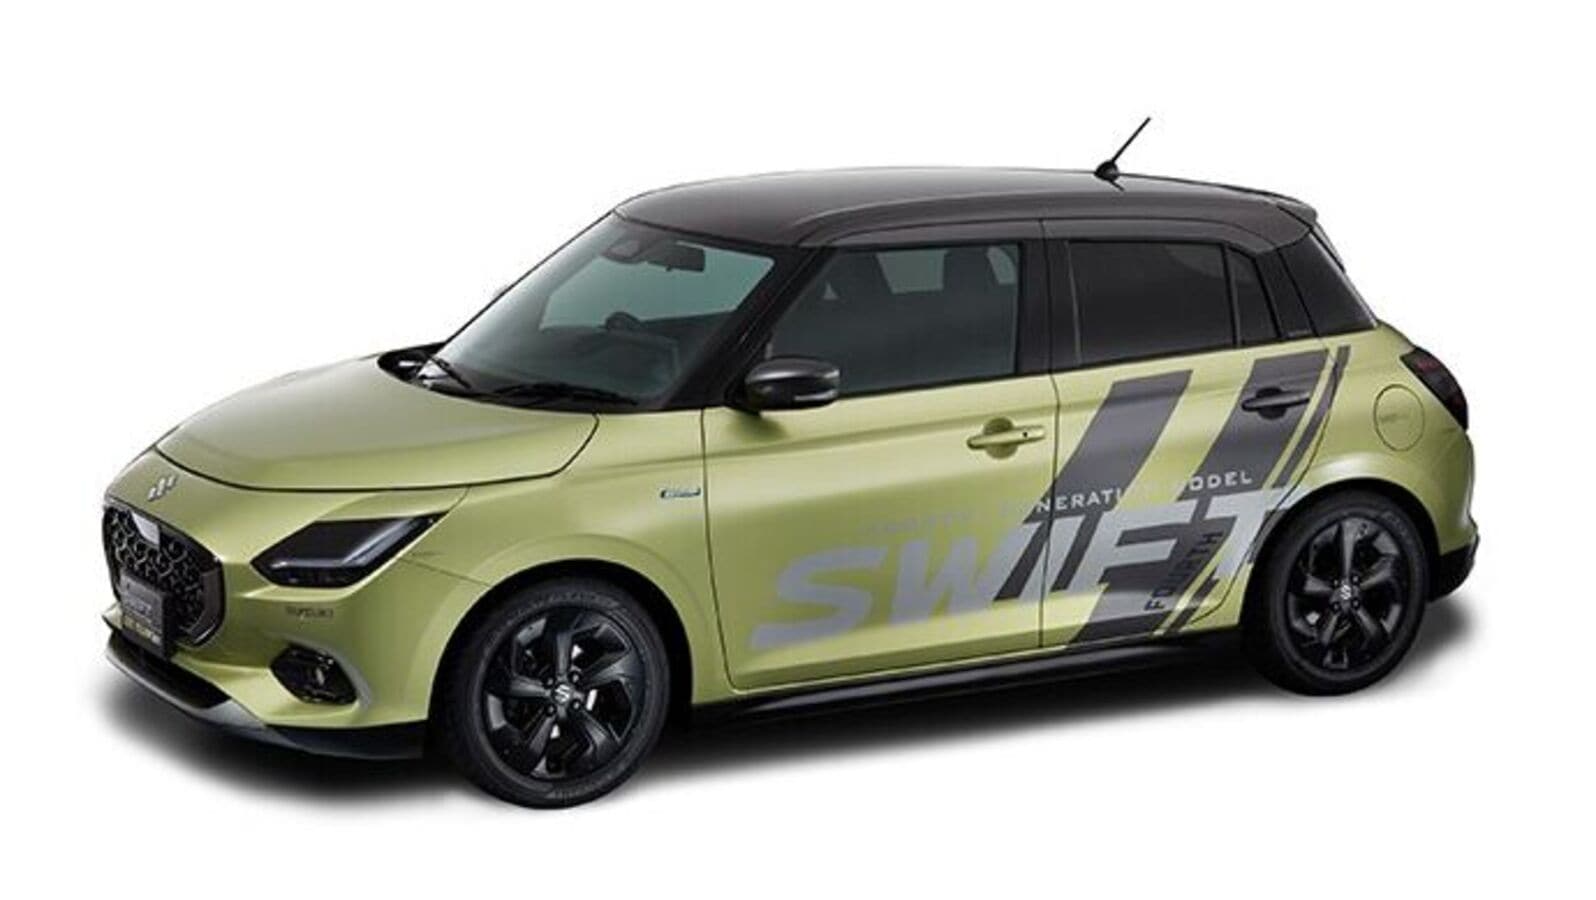 Suzuki Swift Cool Rev concept to be showcased at Tokyo Auto Salon